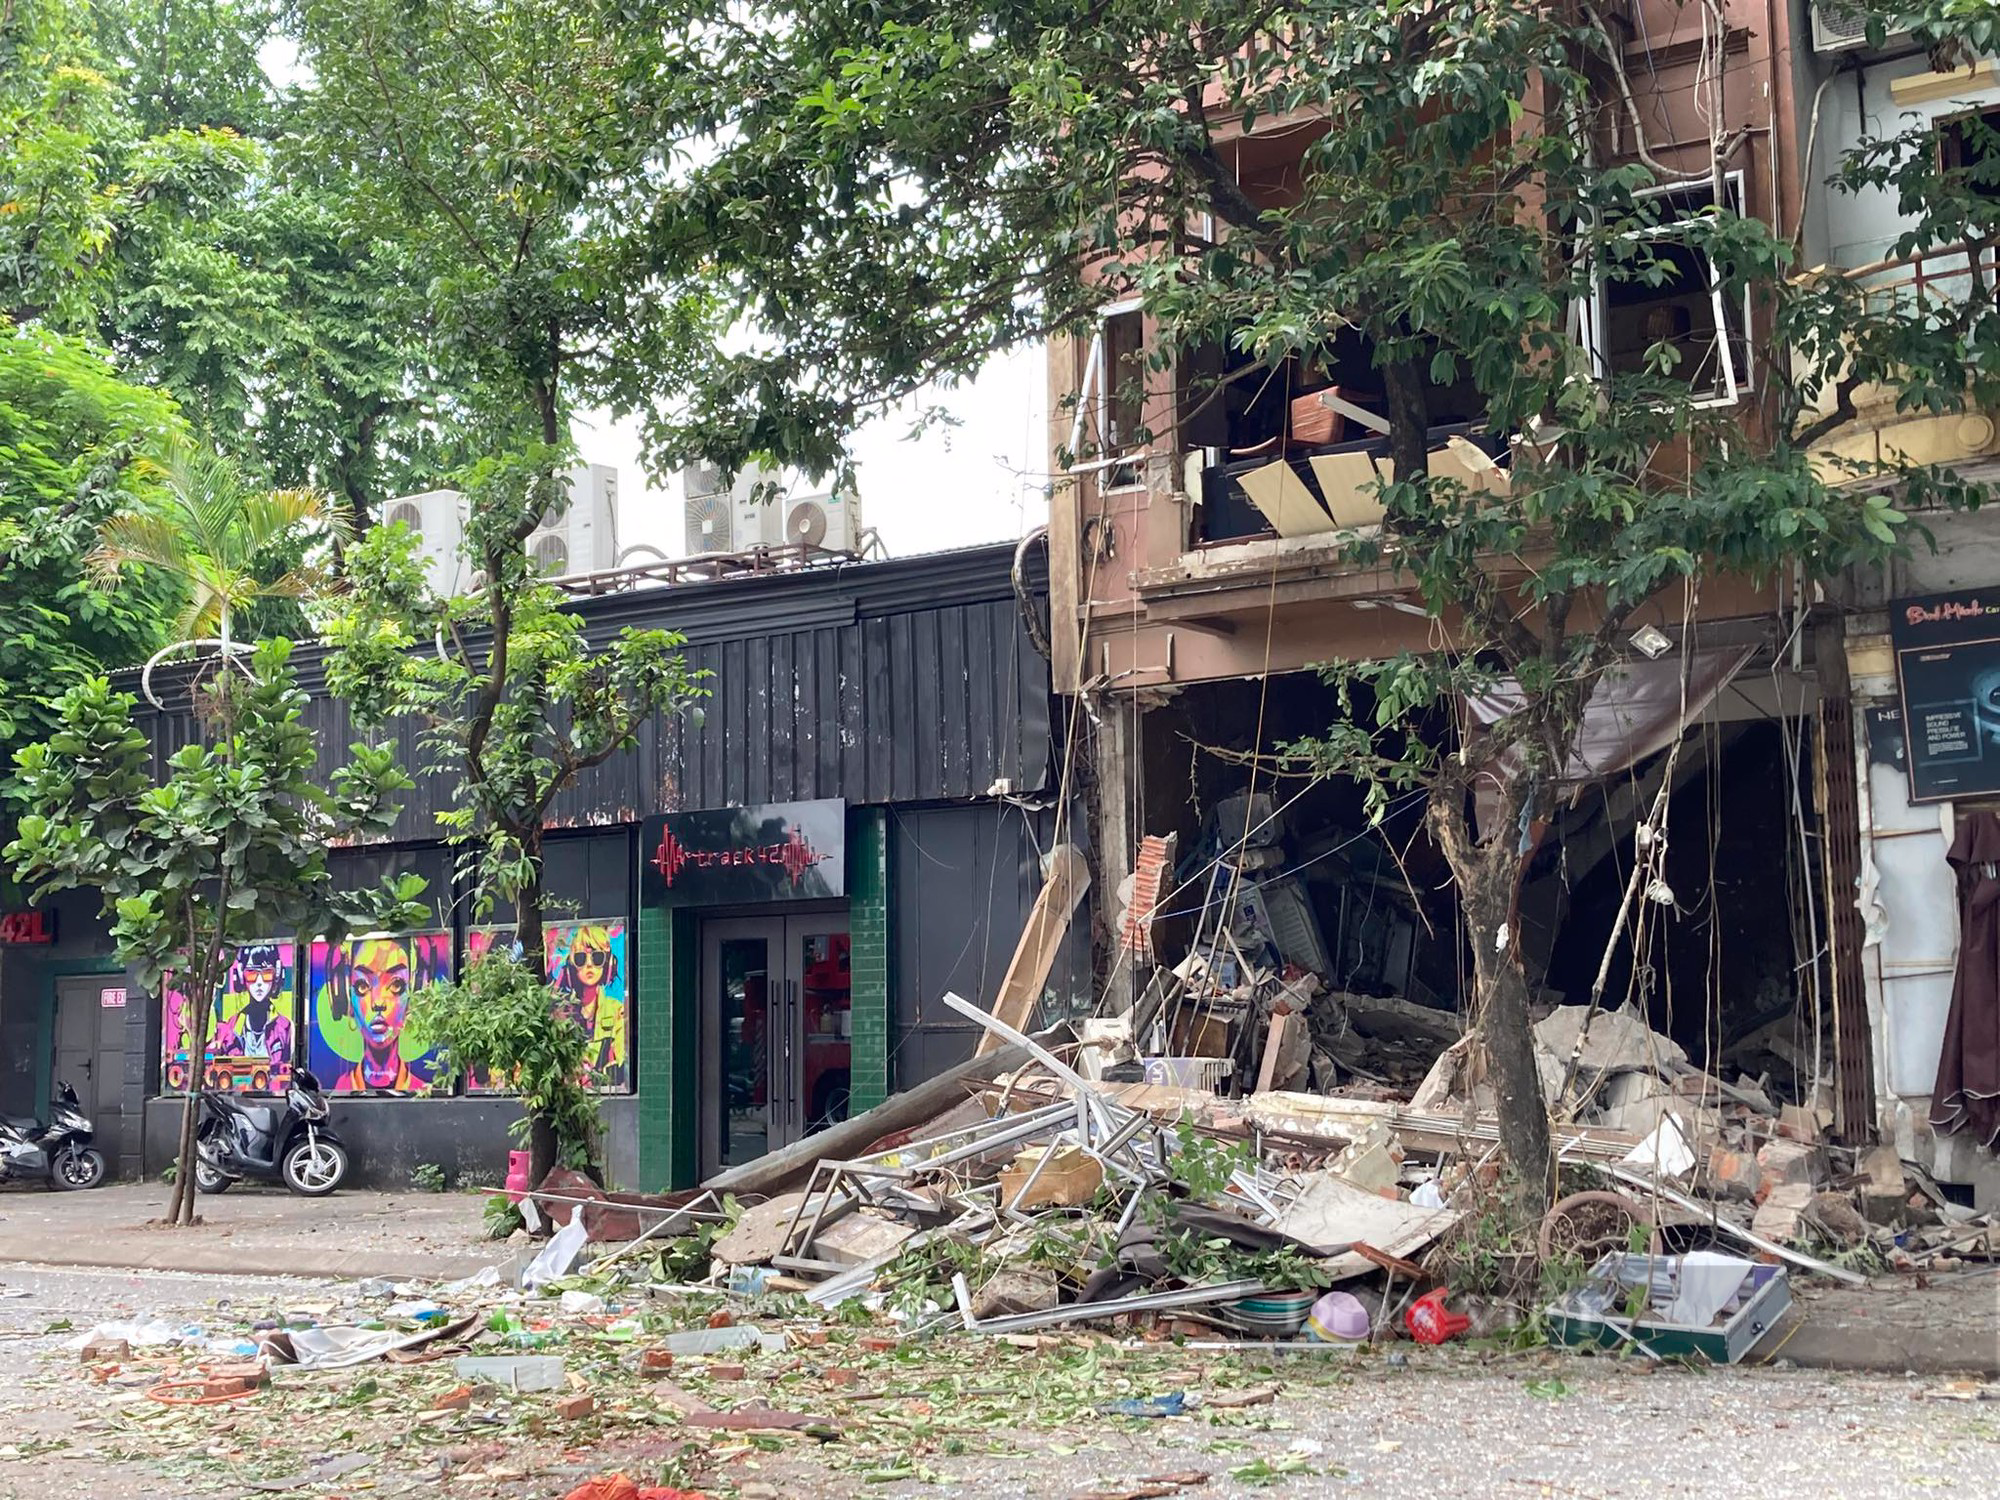 Hiện trường tan hoang sau nổ lớn cực lớn quán lẩu ở phố Yên Phụ, nhiều người bị thương nặng - Ảnh 3.